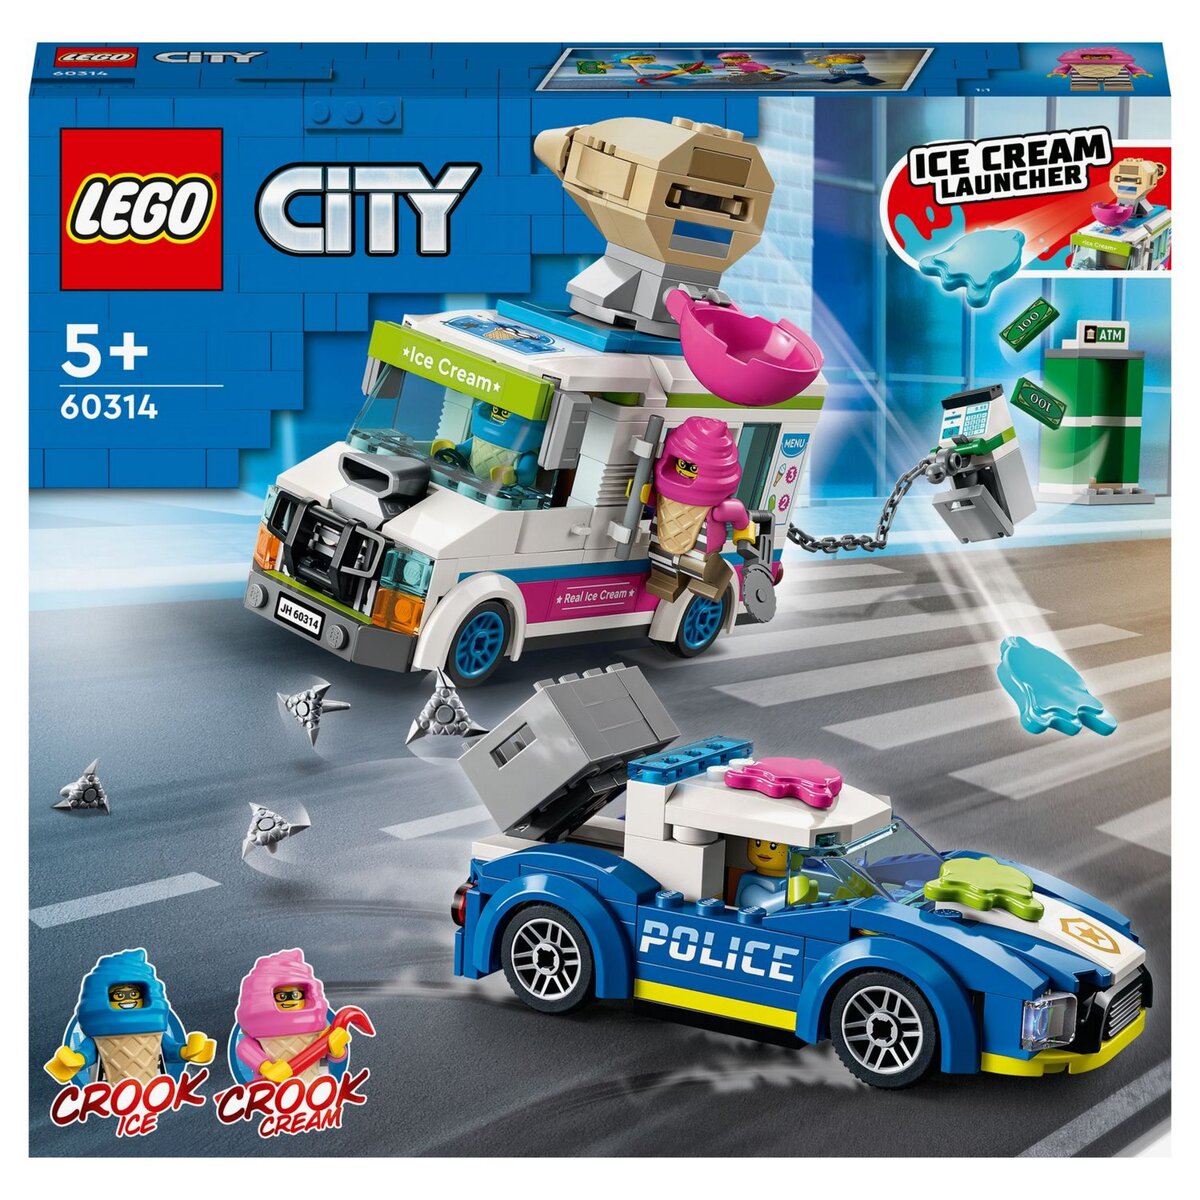 LEGO 60415 - La course-poursuite entre la voitur…